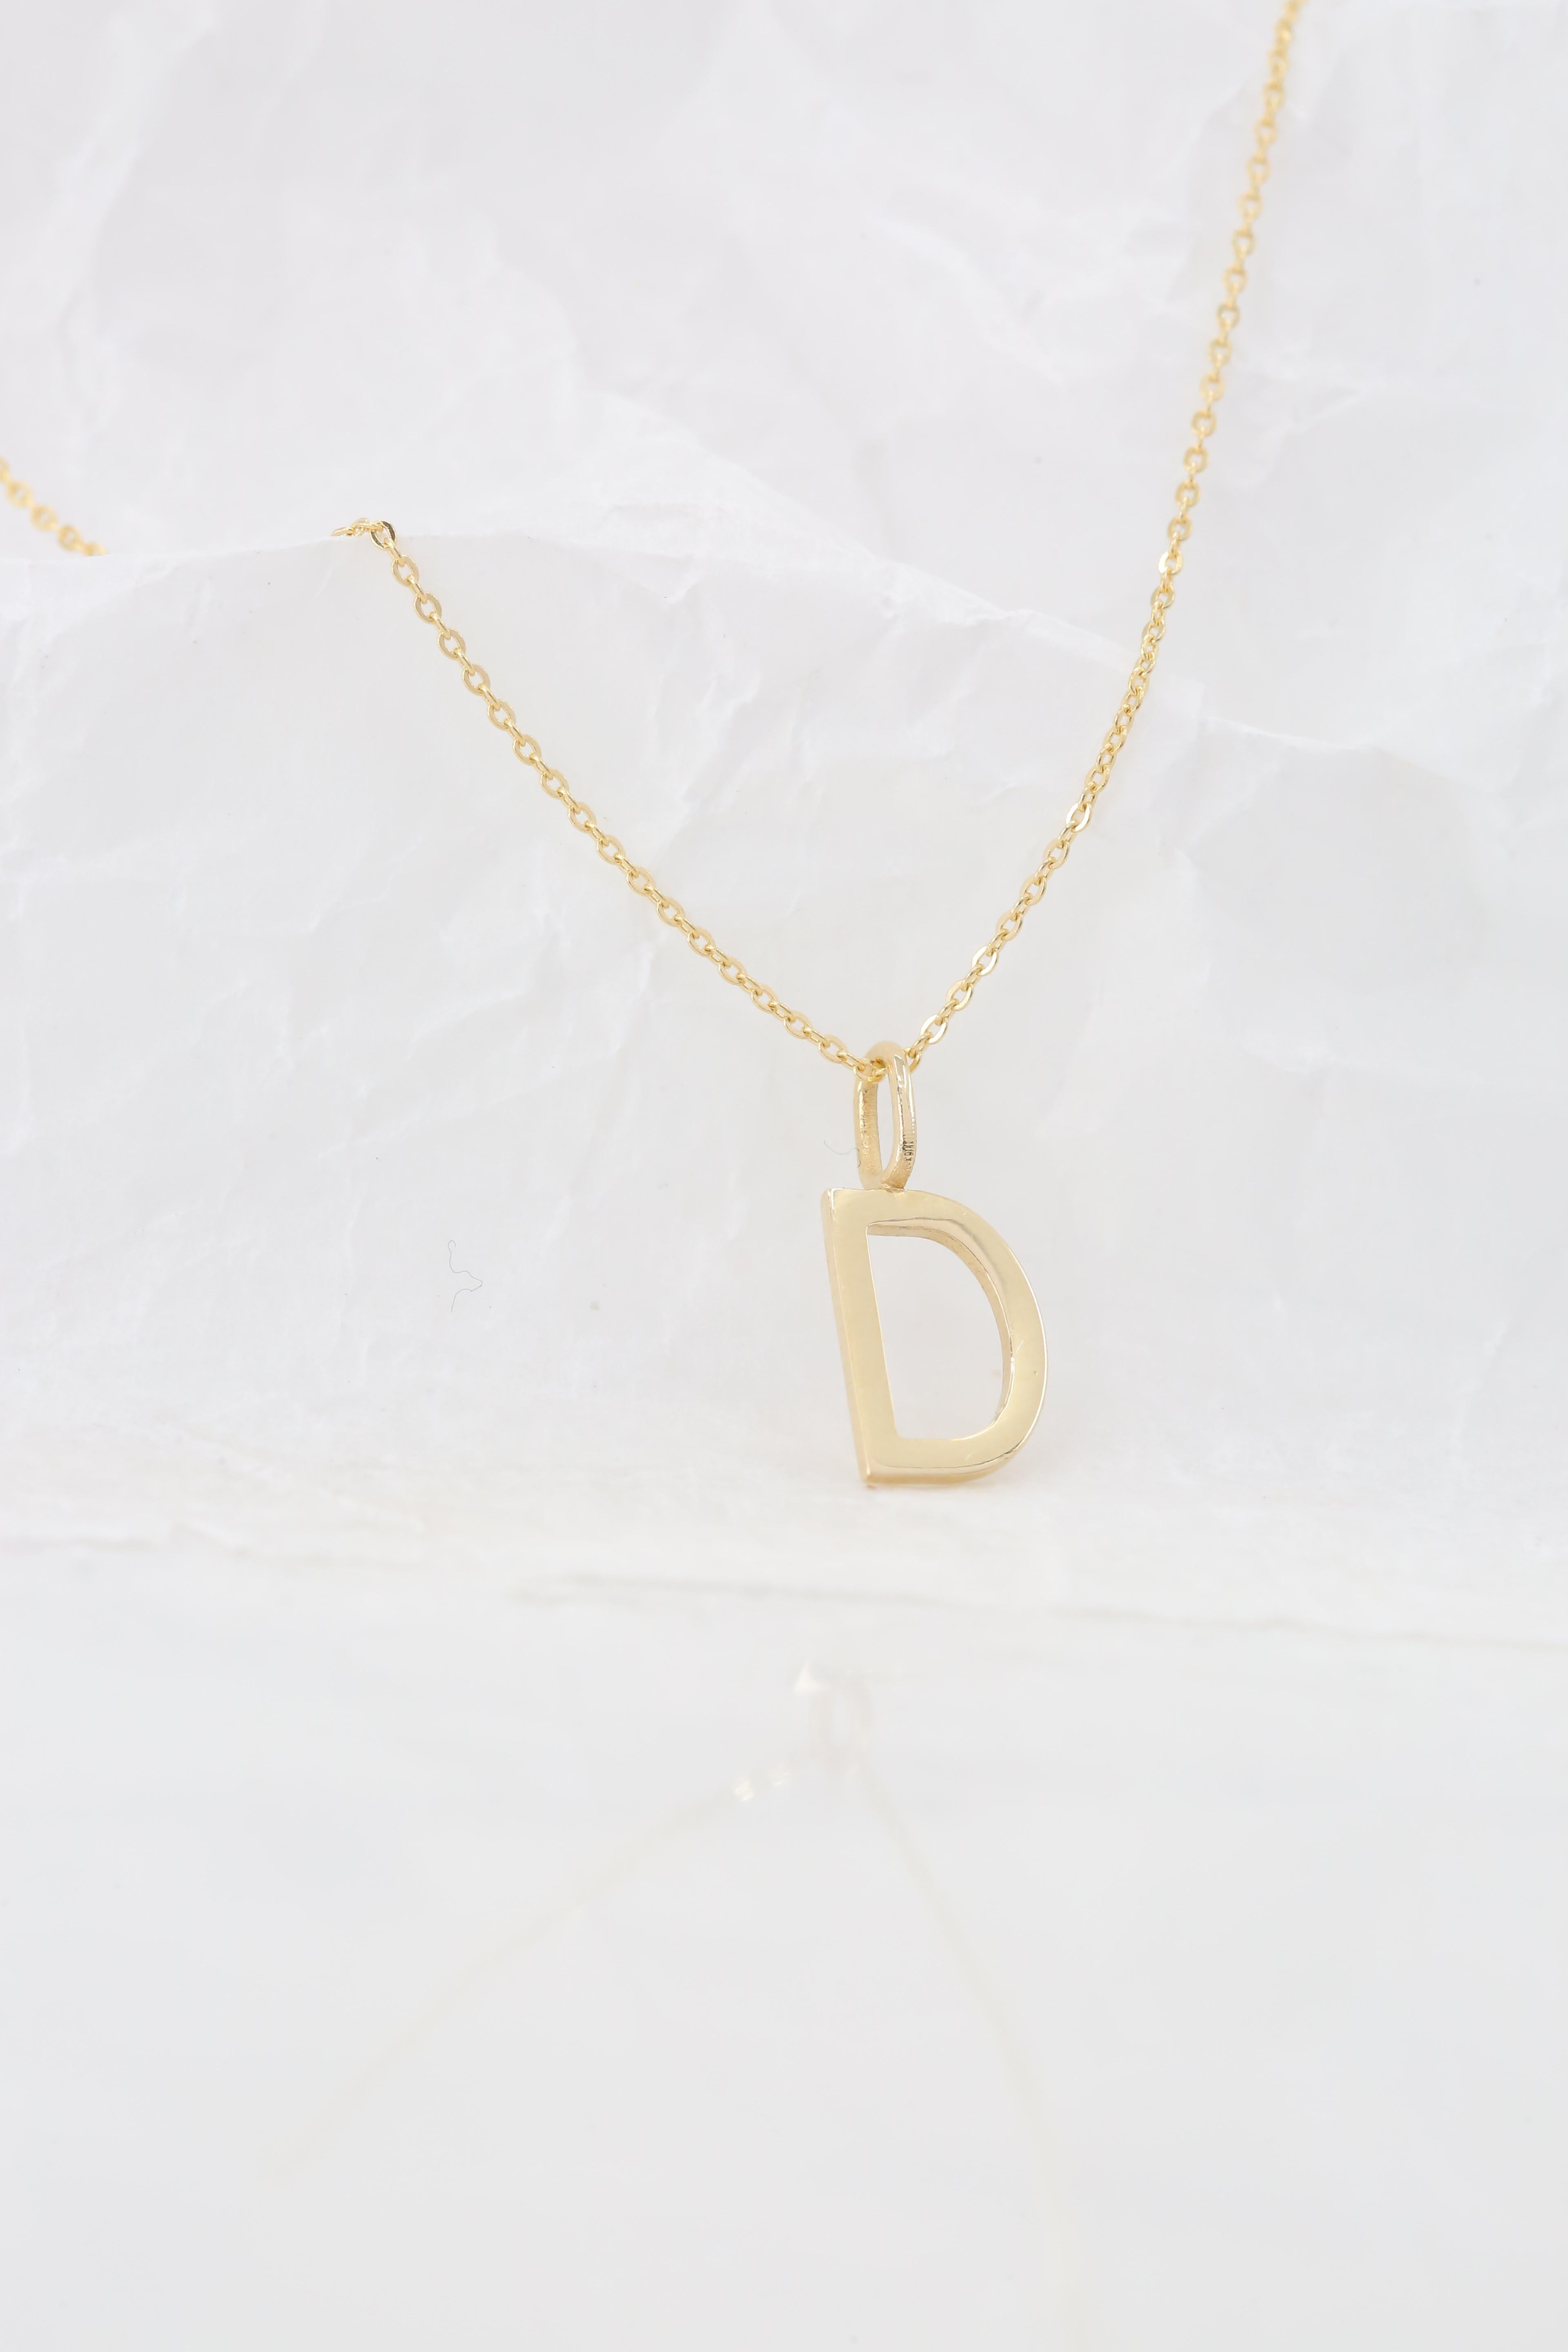 Women's or Men's 14k Gold Necklaces, Letter Necklace Models, Letter D Gold Necklace-Gift Necklace For Sale